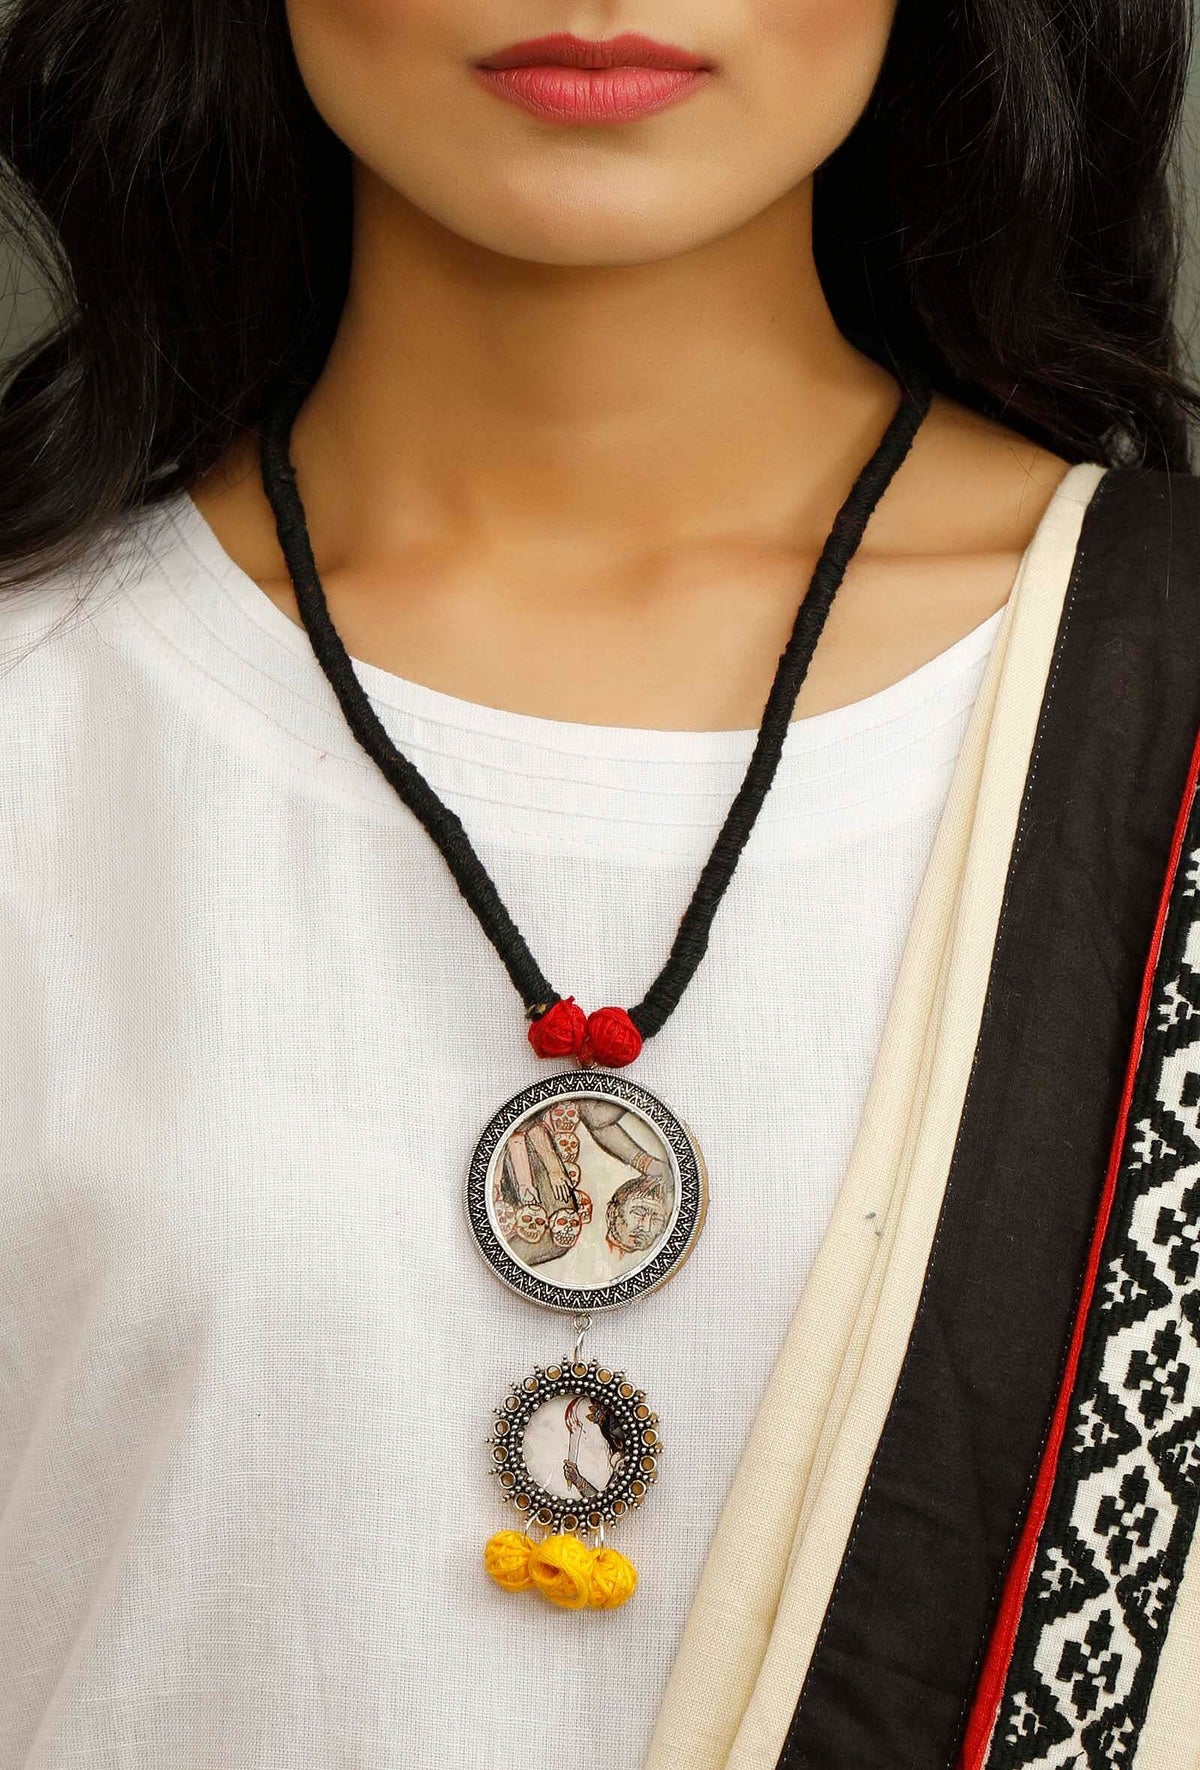 Kali Maa Black Thread Necklace